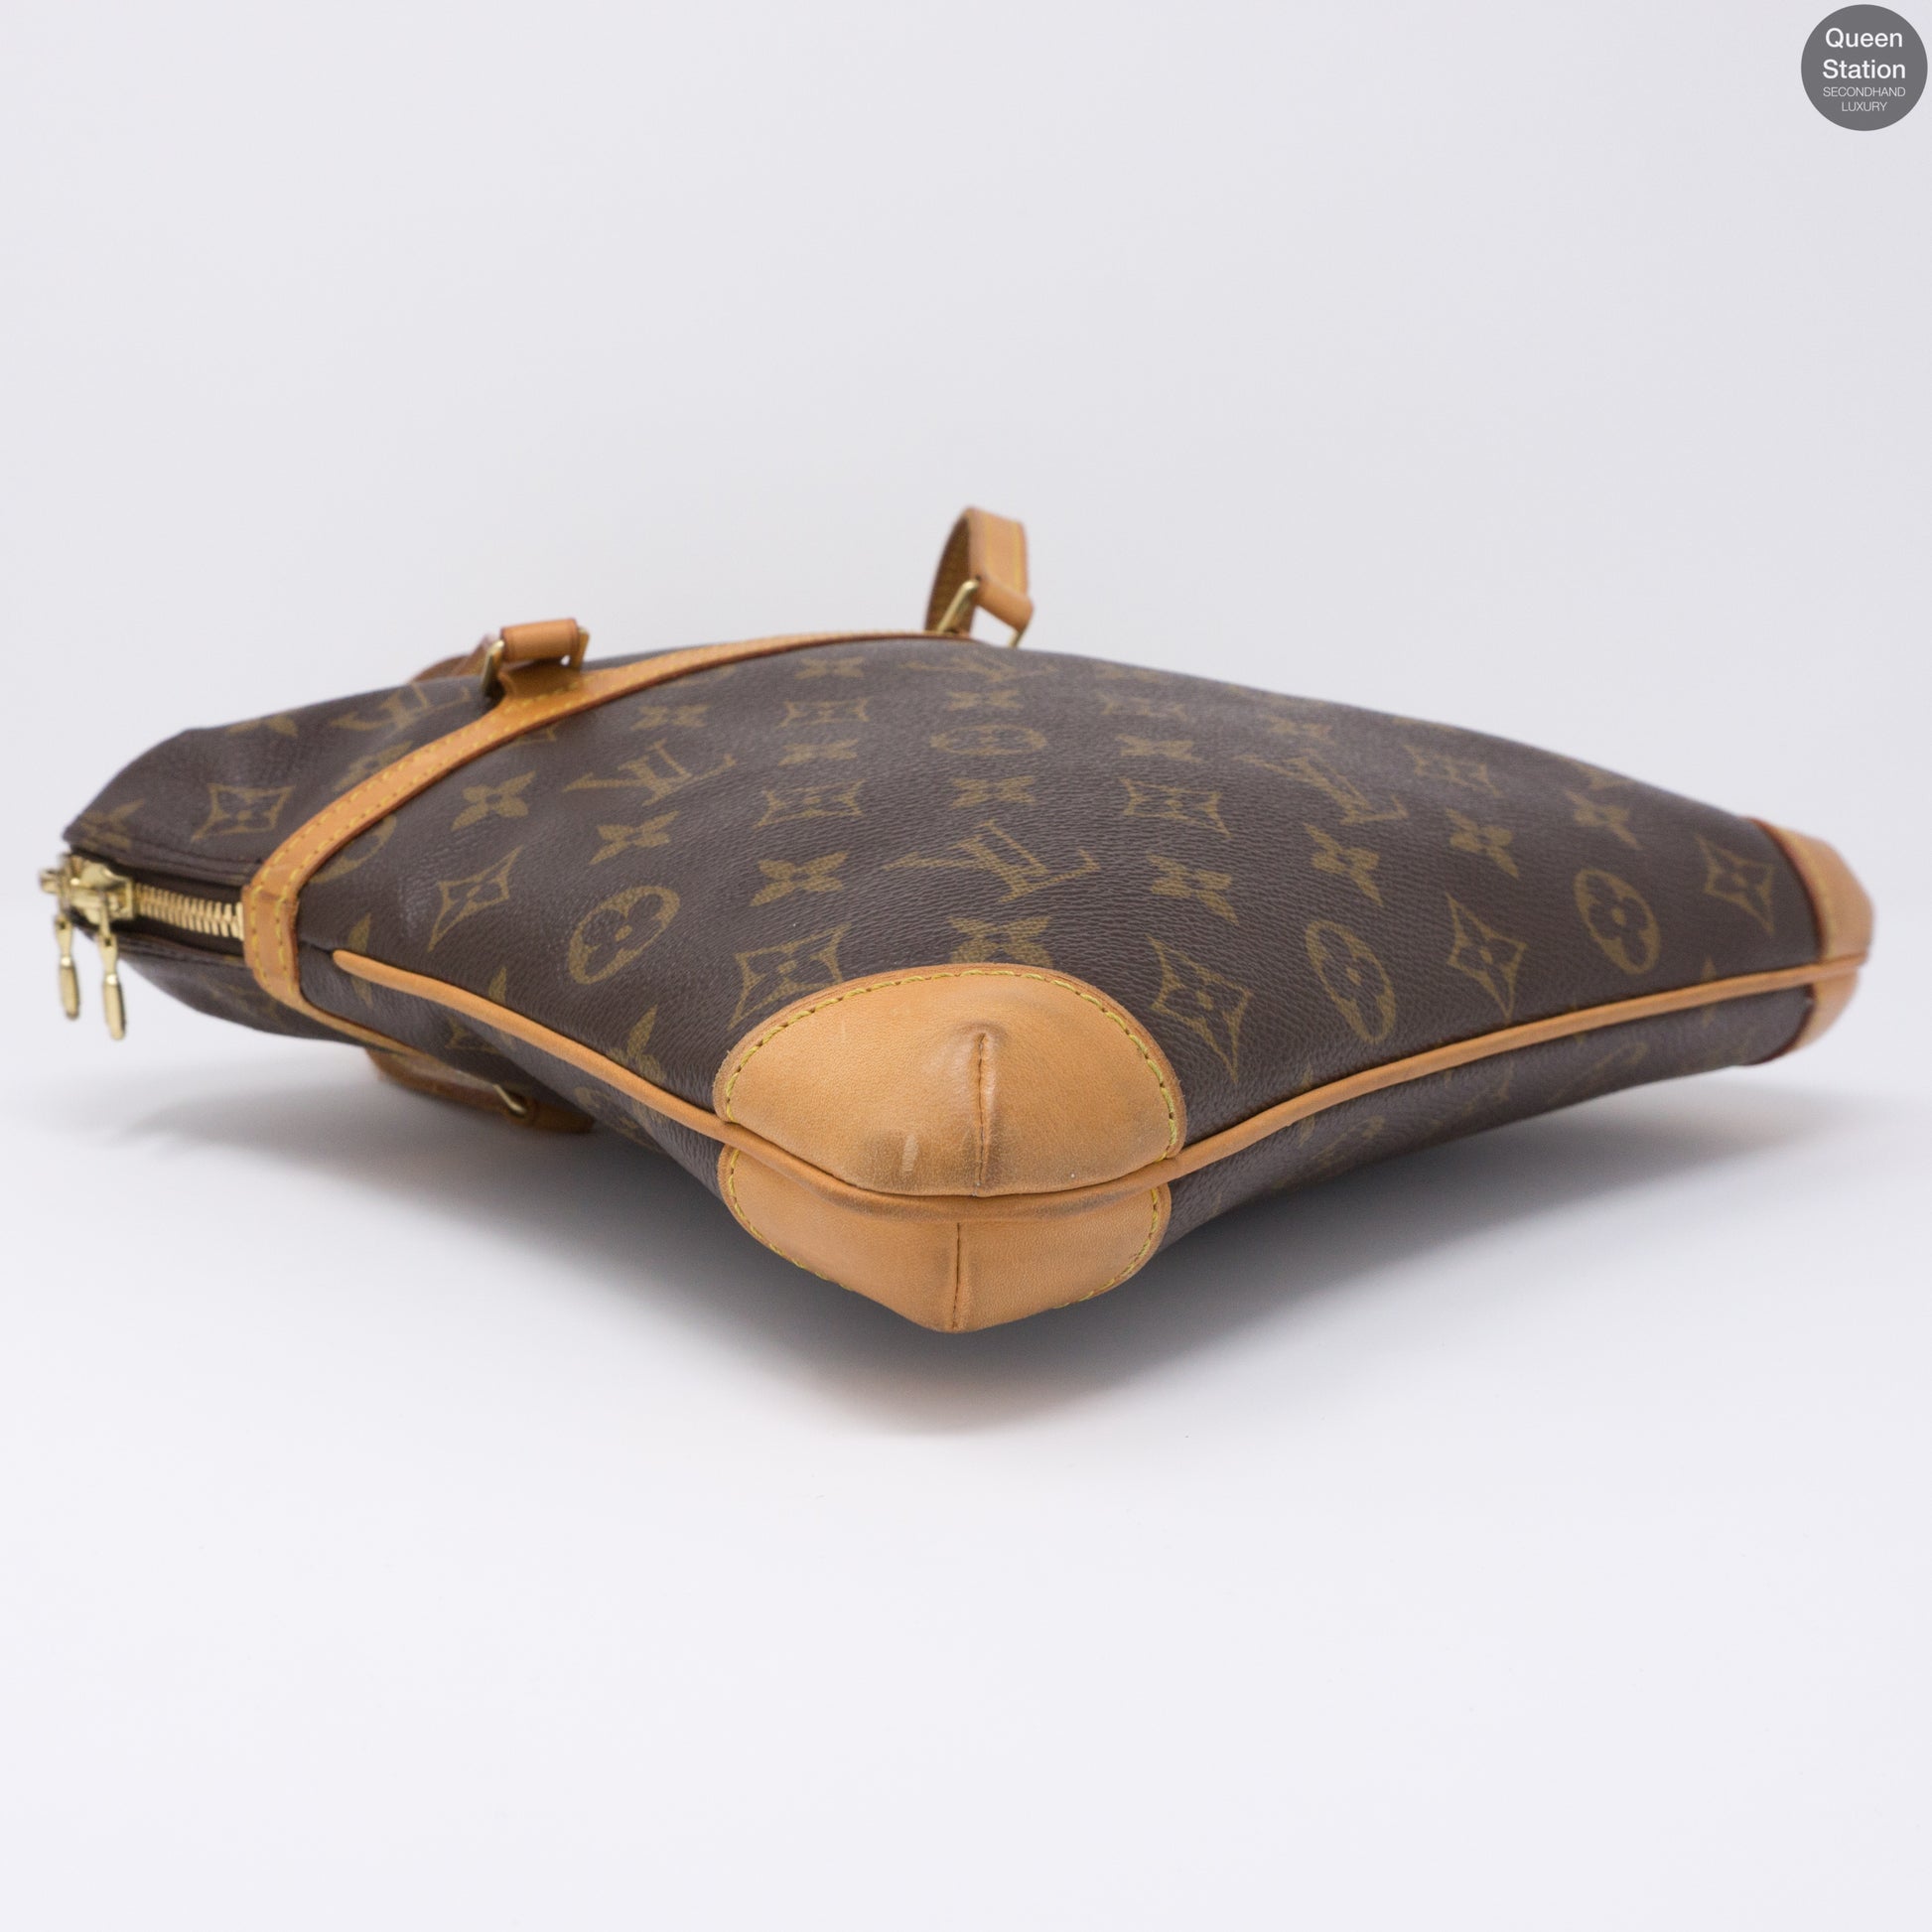 Louis Vuitton Monogram Coussin GM Flat Shoulder Bag 98lv50